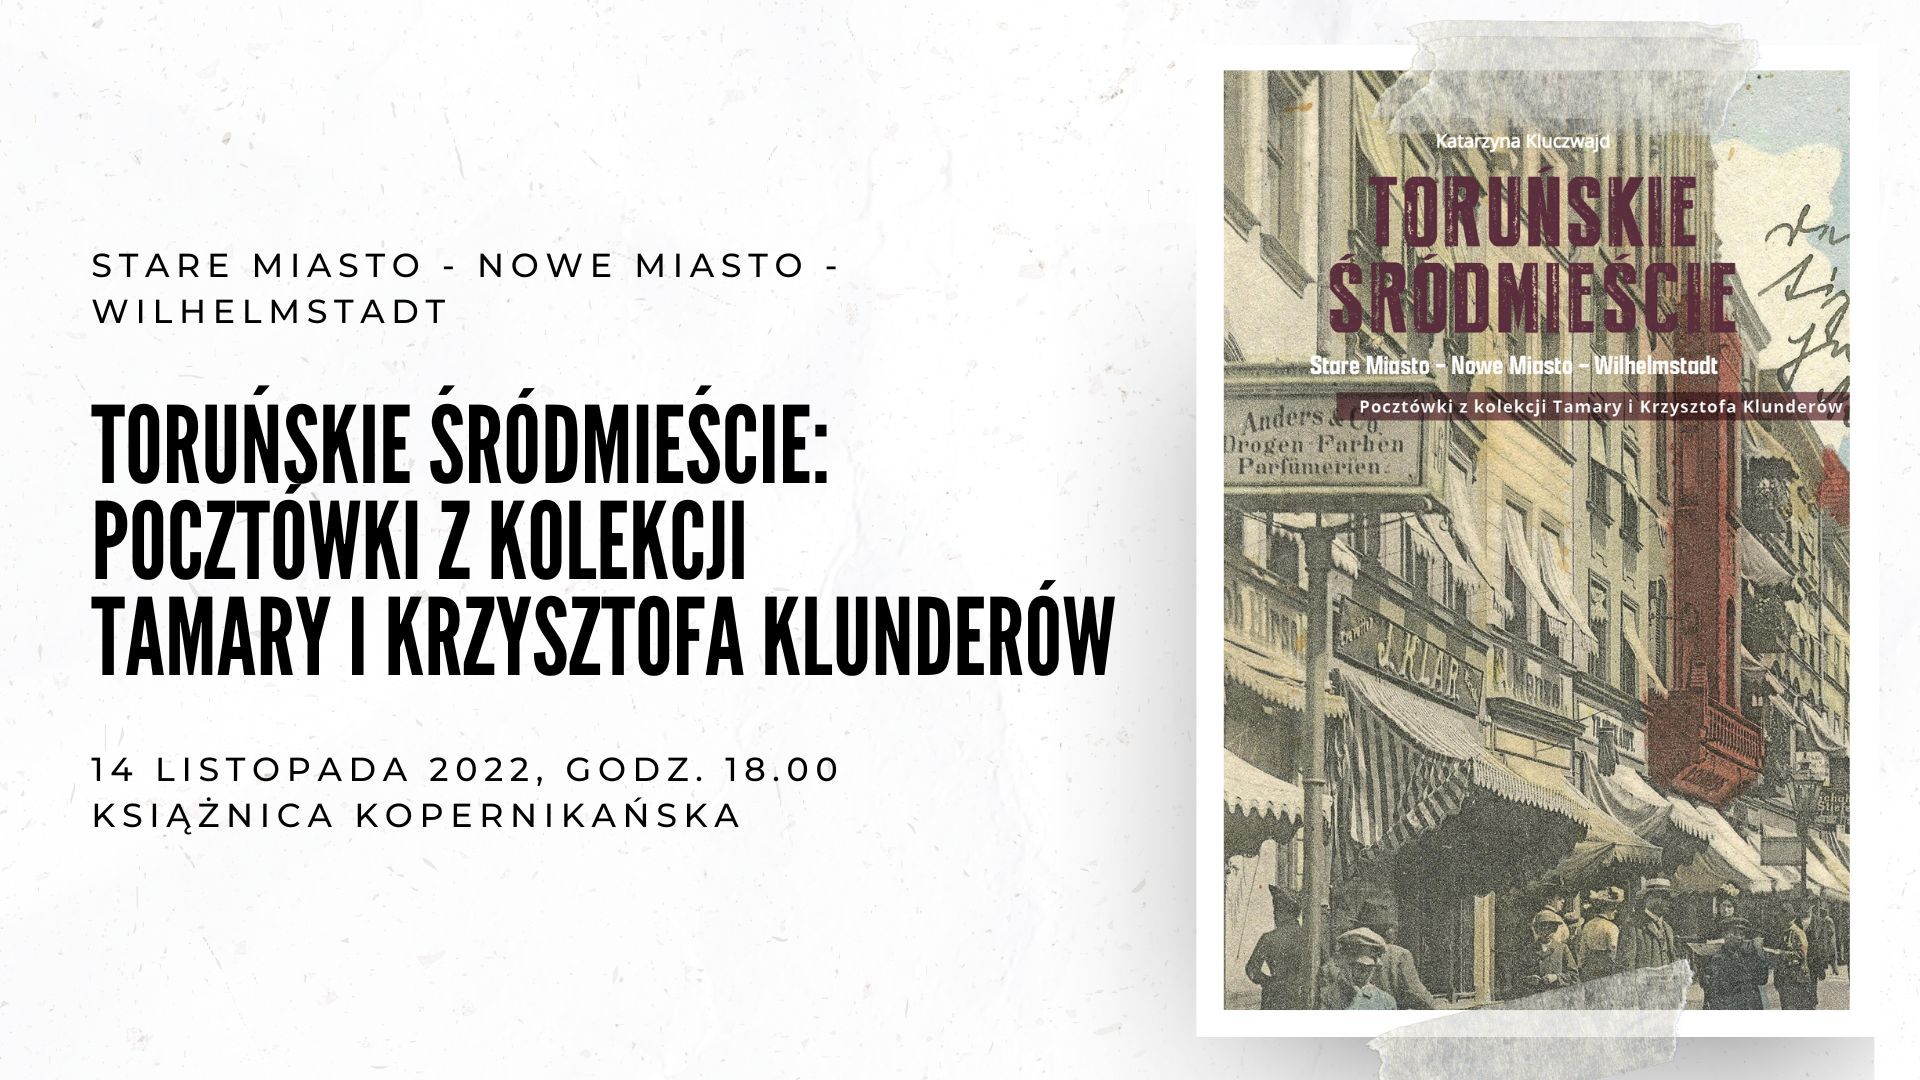 Toruńskie śródmieście. Pocztówki z kolekcji Tamary i Krzysztofa Klunderów